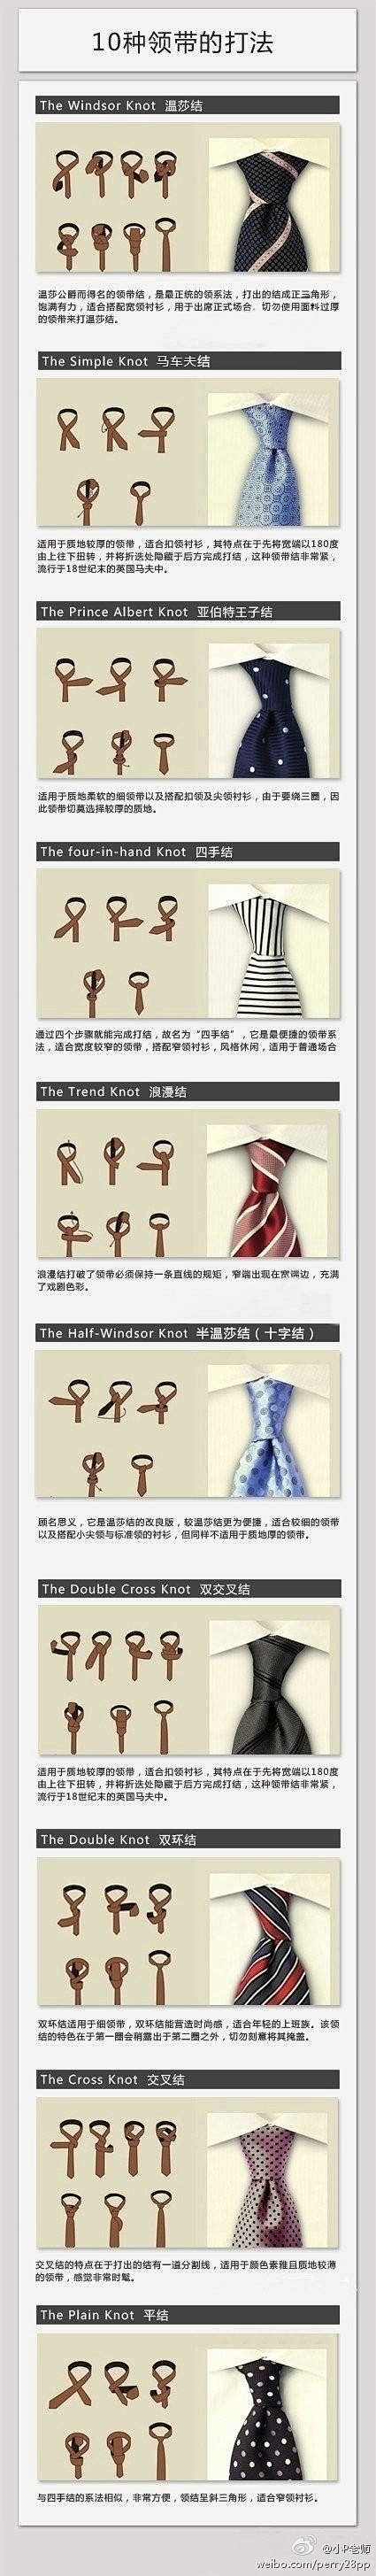 领带的打法